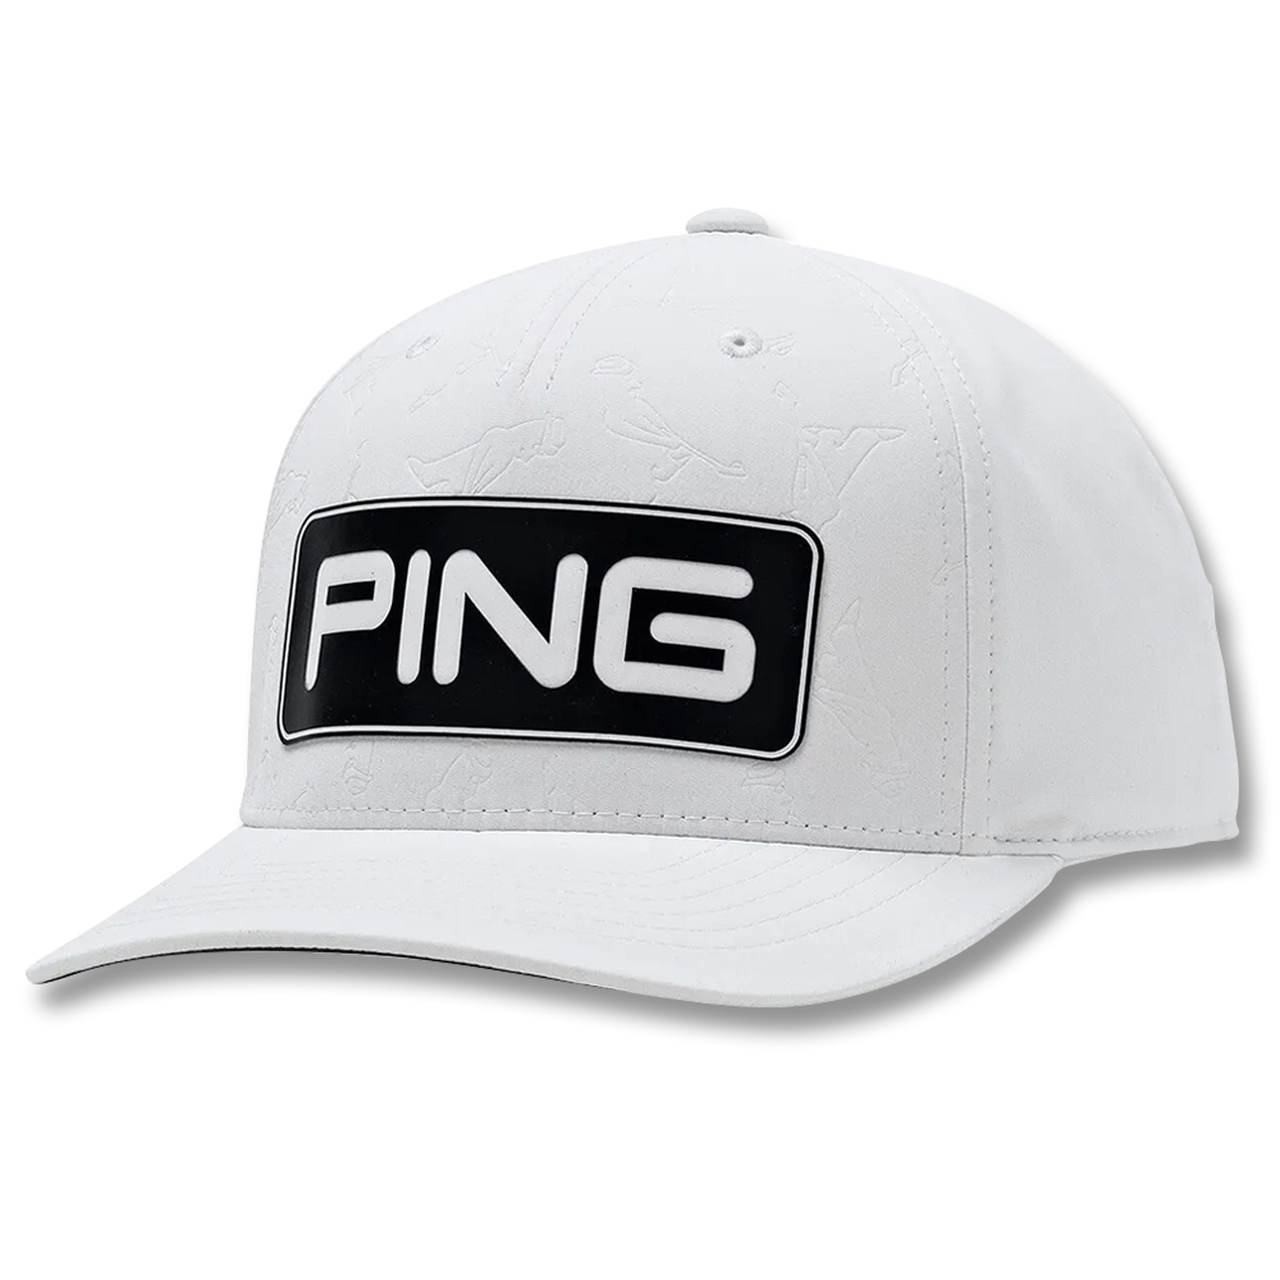 Ping Golf Hats 2021 - KibrisPDR